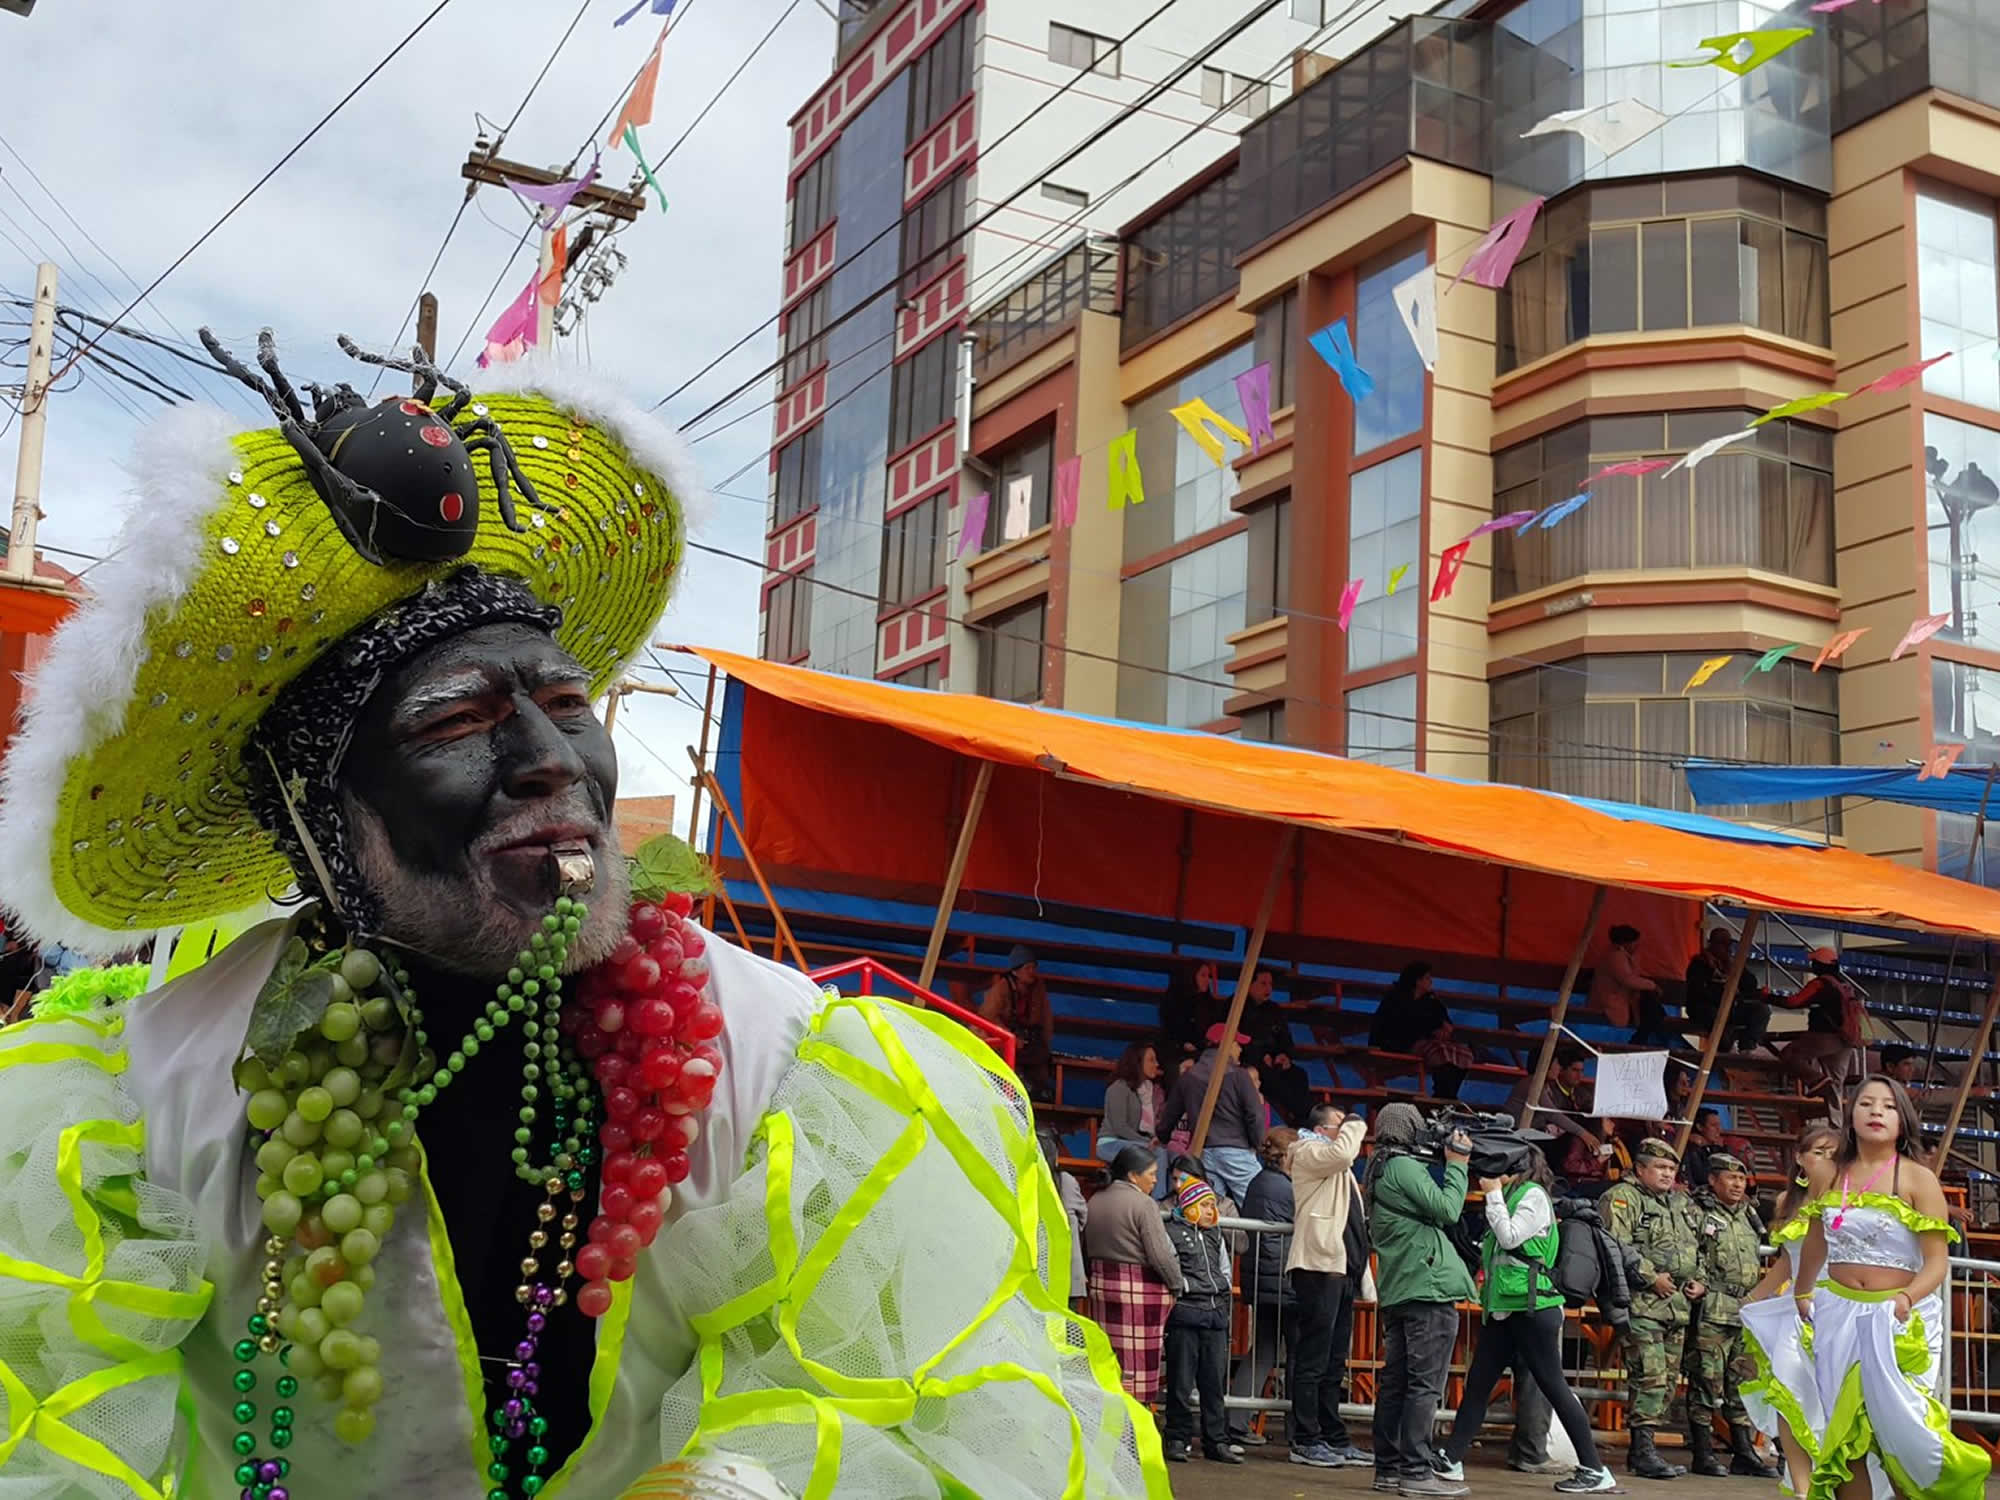 Negritos - Oruro Carnival Dance